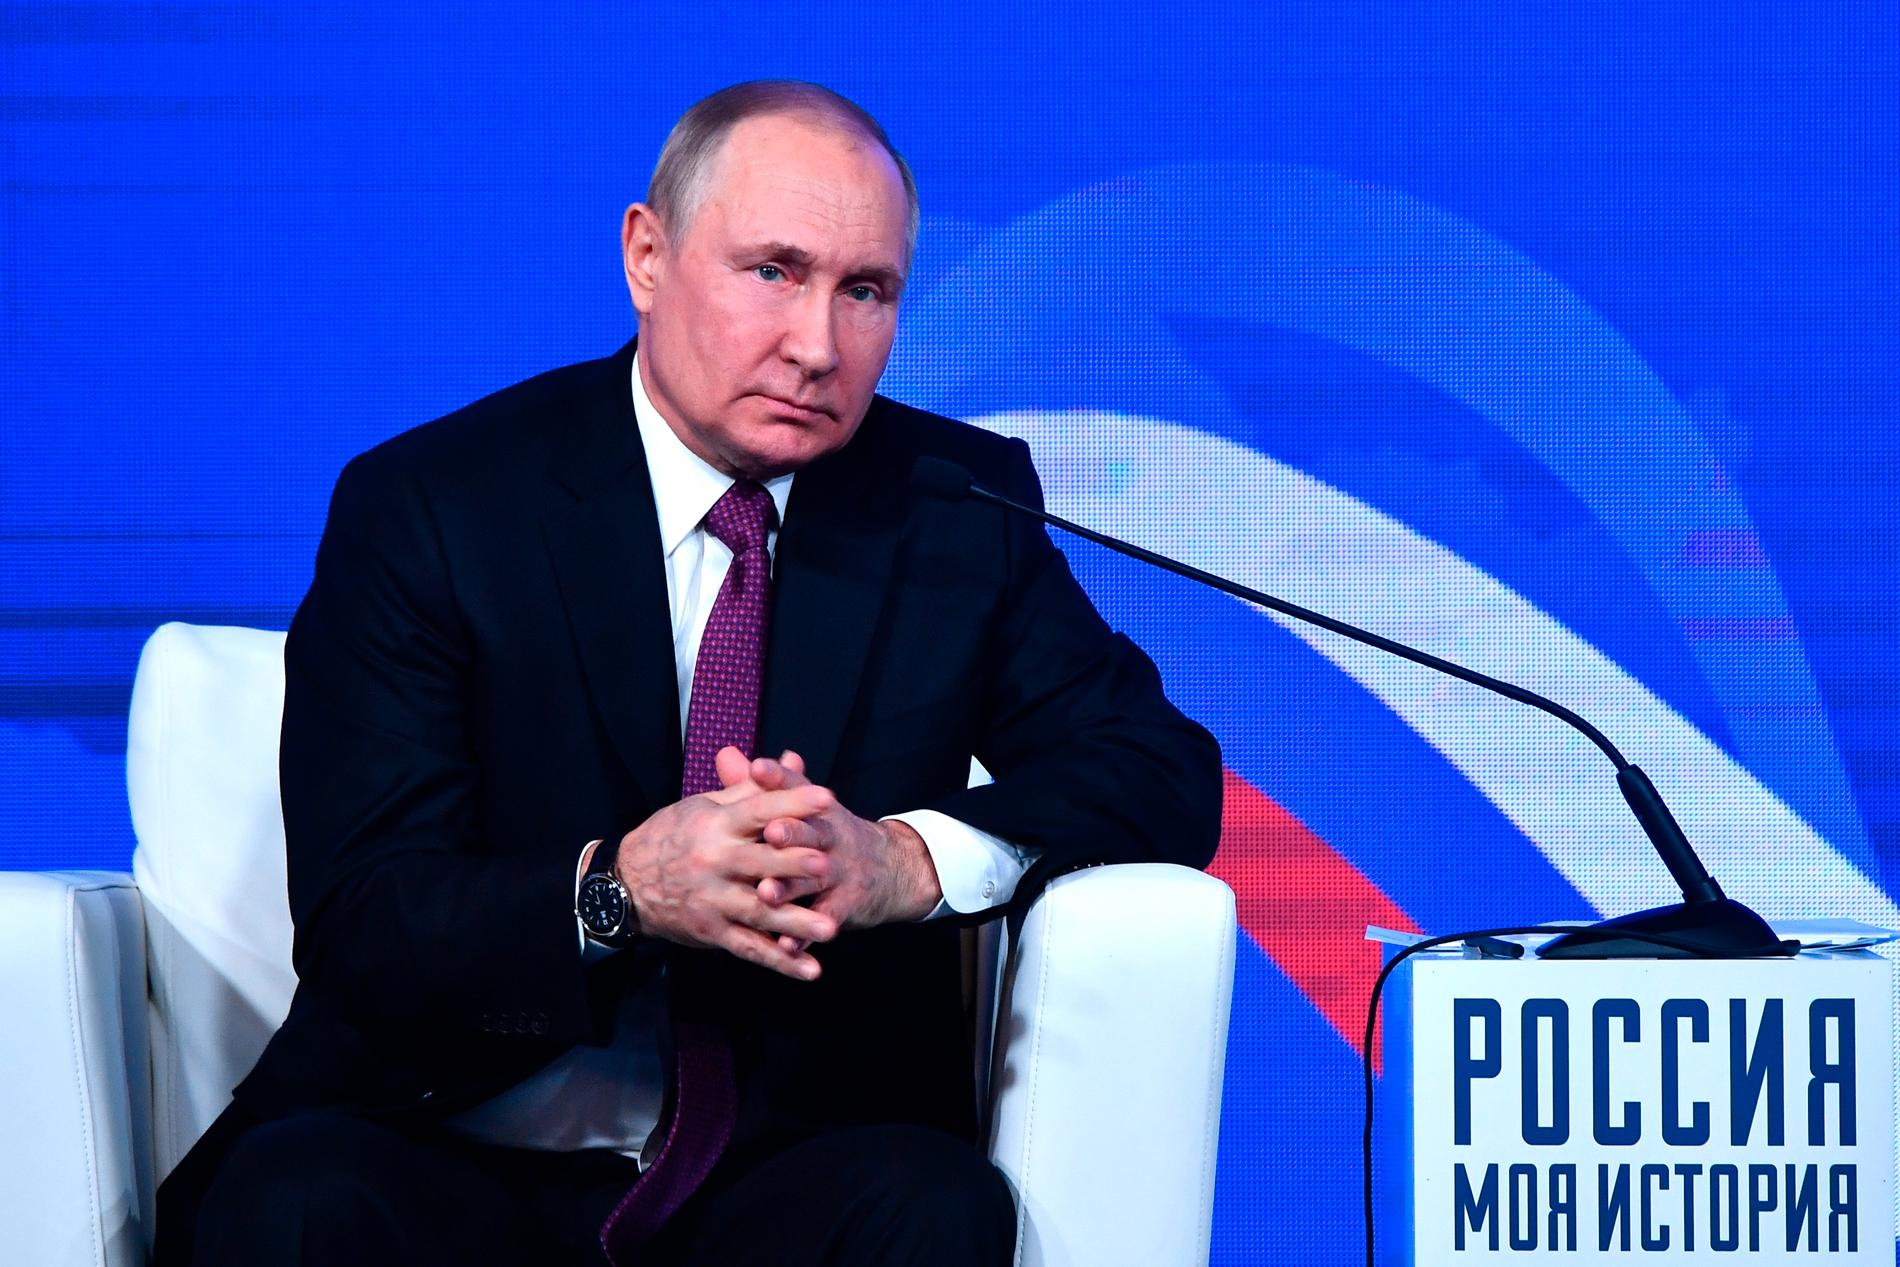  Indonesien som är värd för toppmötet har vägrat dra tillbaka sin inbjudan till Putin.